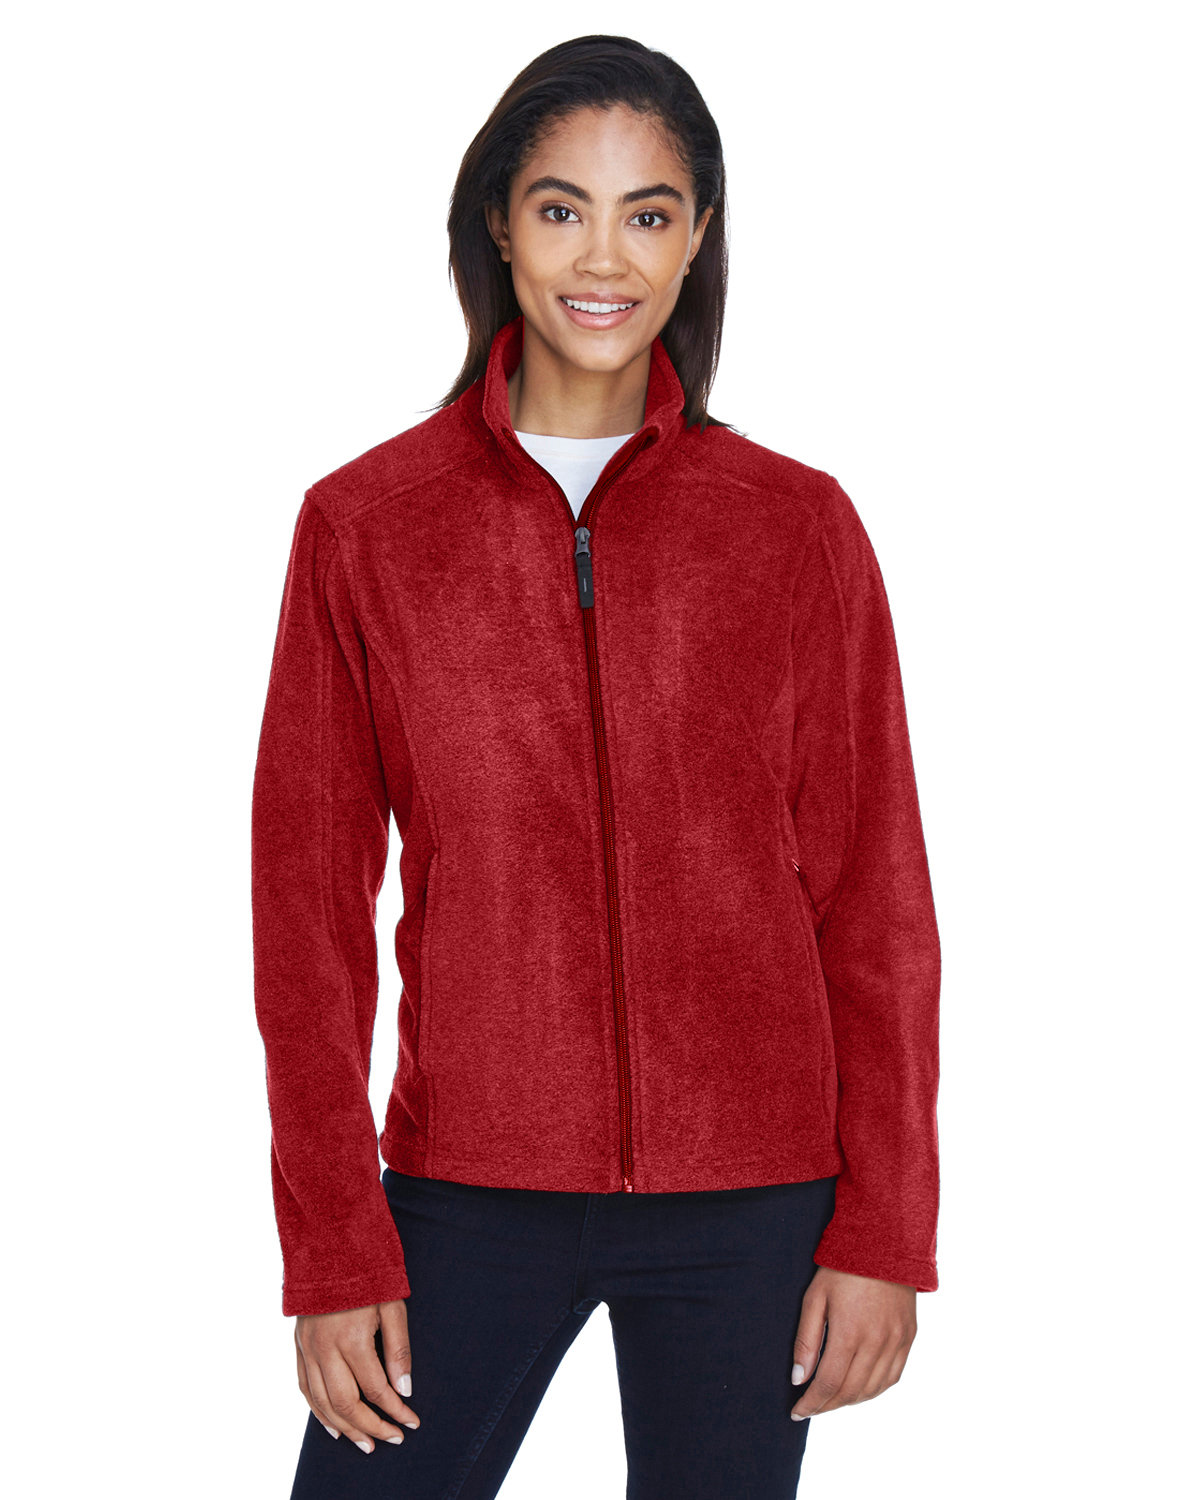 CORE365 Ladies' Journey Fleece Jacket classic red 